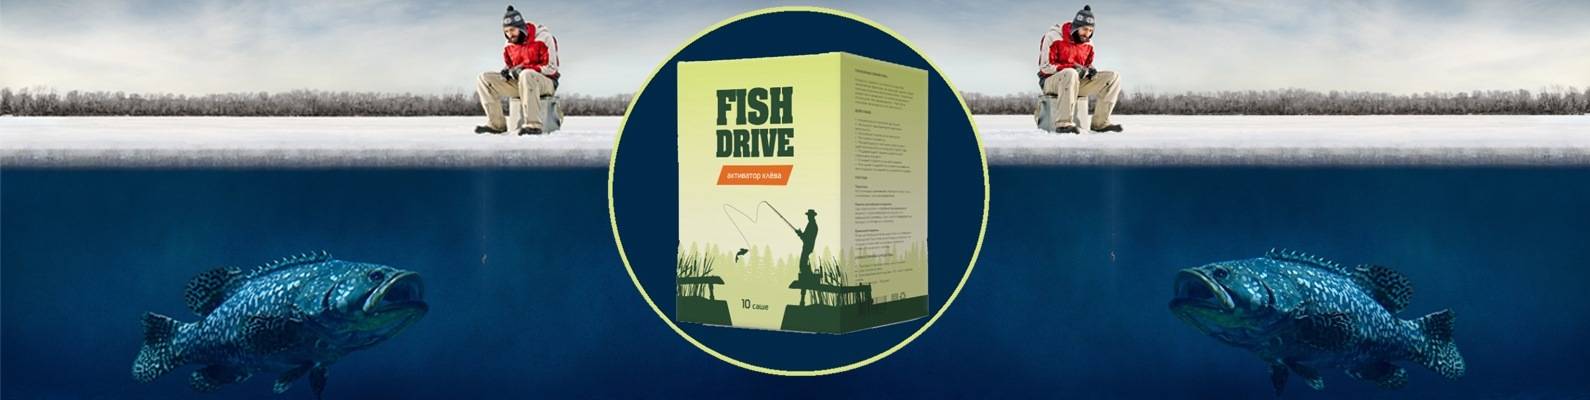 Реальные и отрицательные отзывы о приманке для рыбы fish drive - новости о здоровье